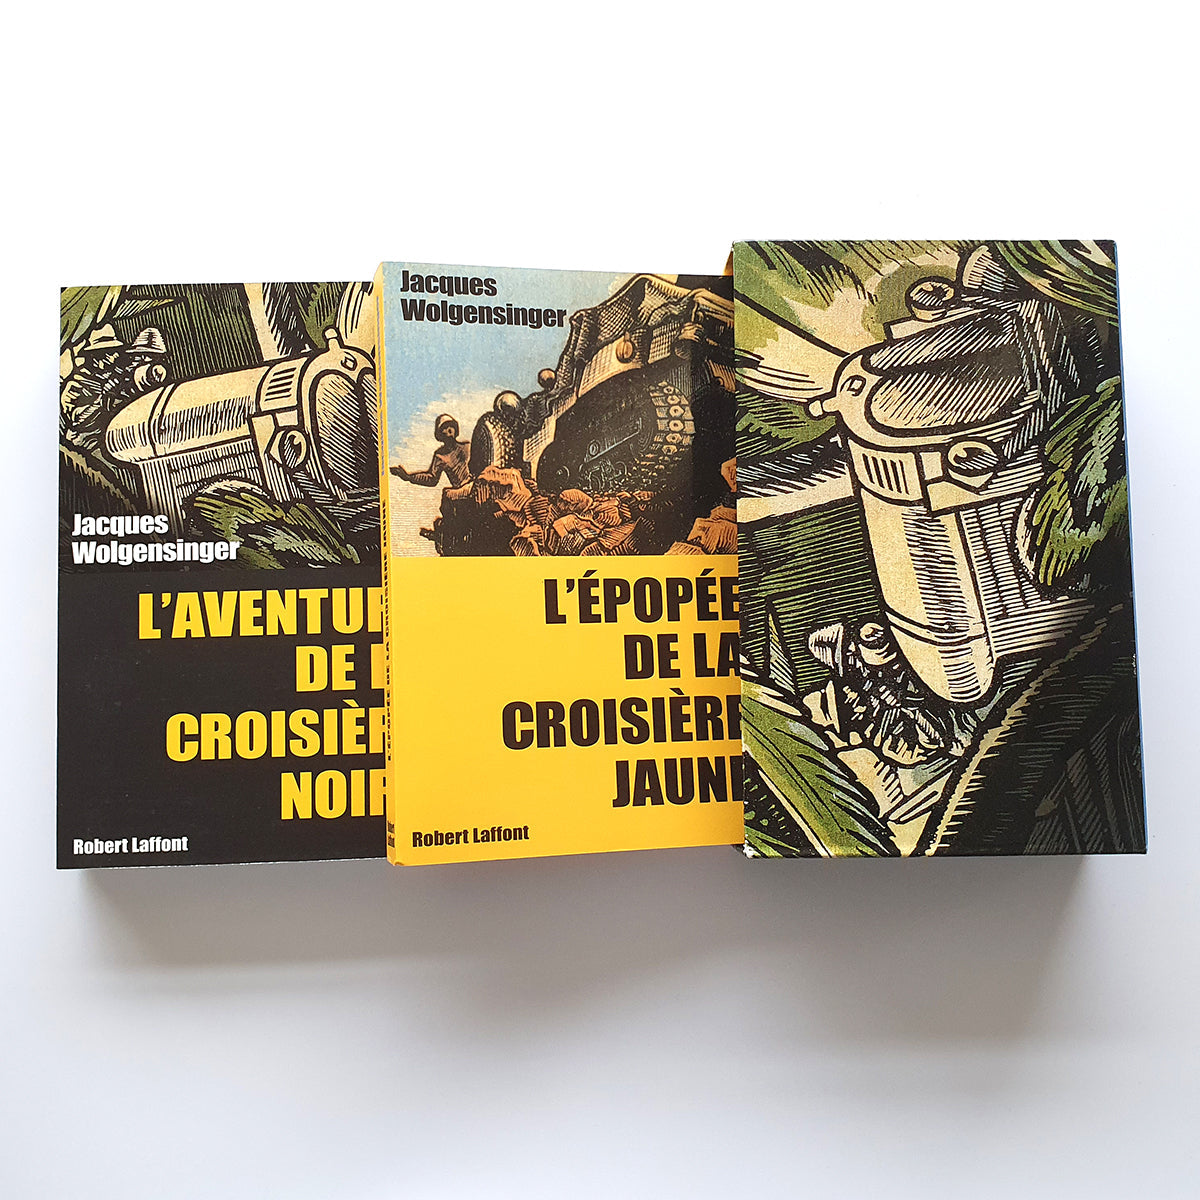 Les grandes croisières Citroën; cassette